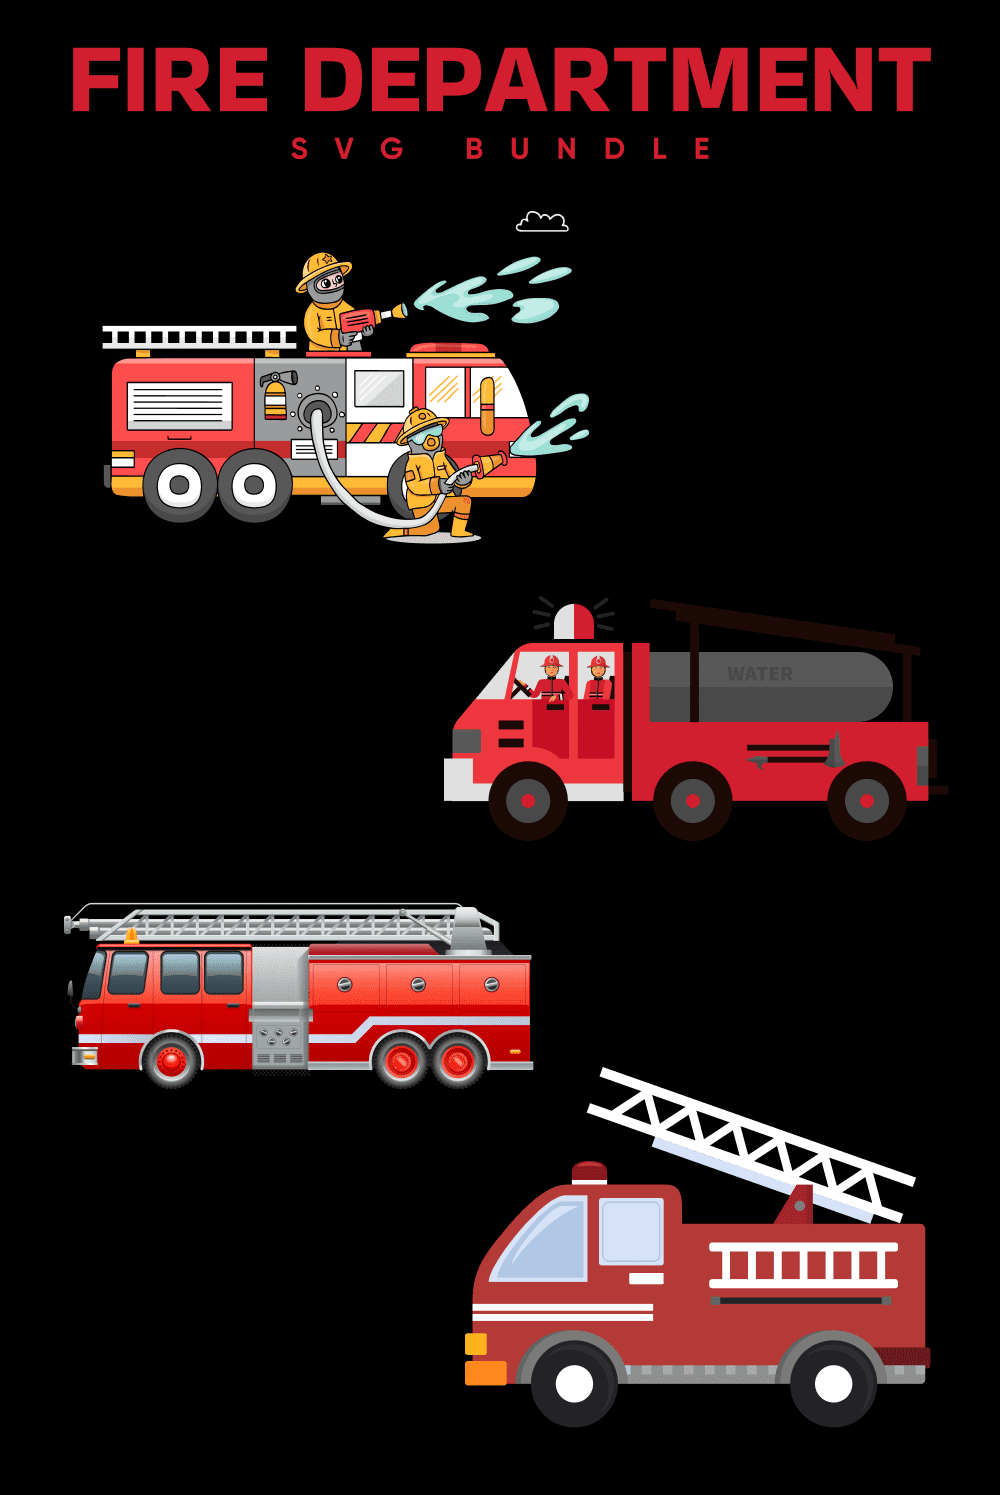 Fire Department Svg - Pinterest.